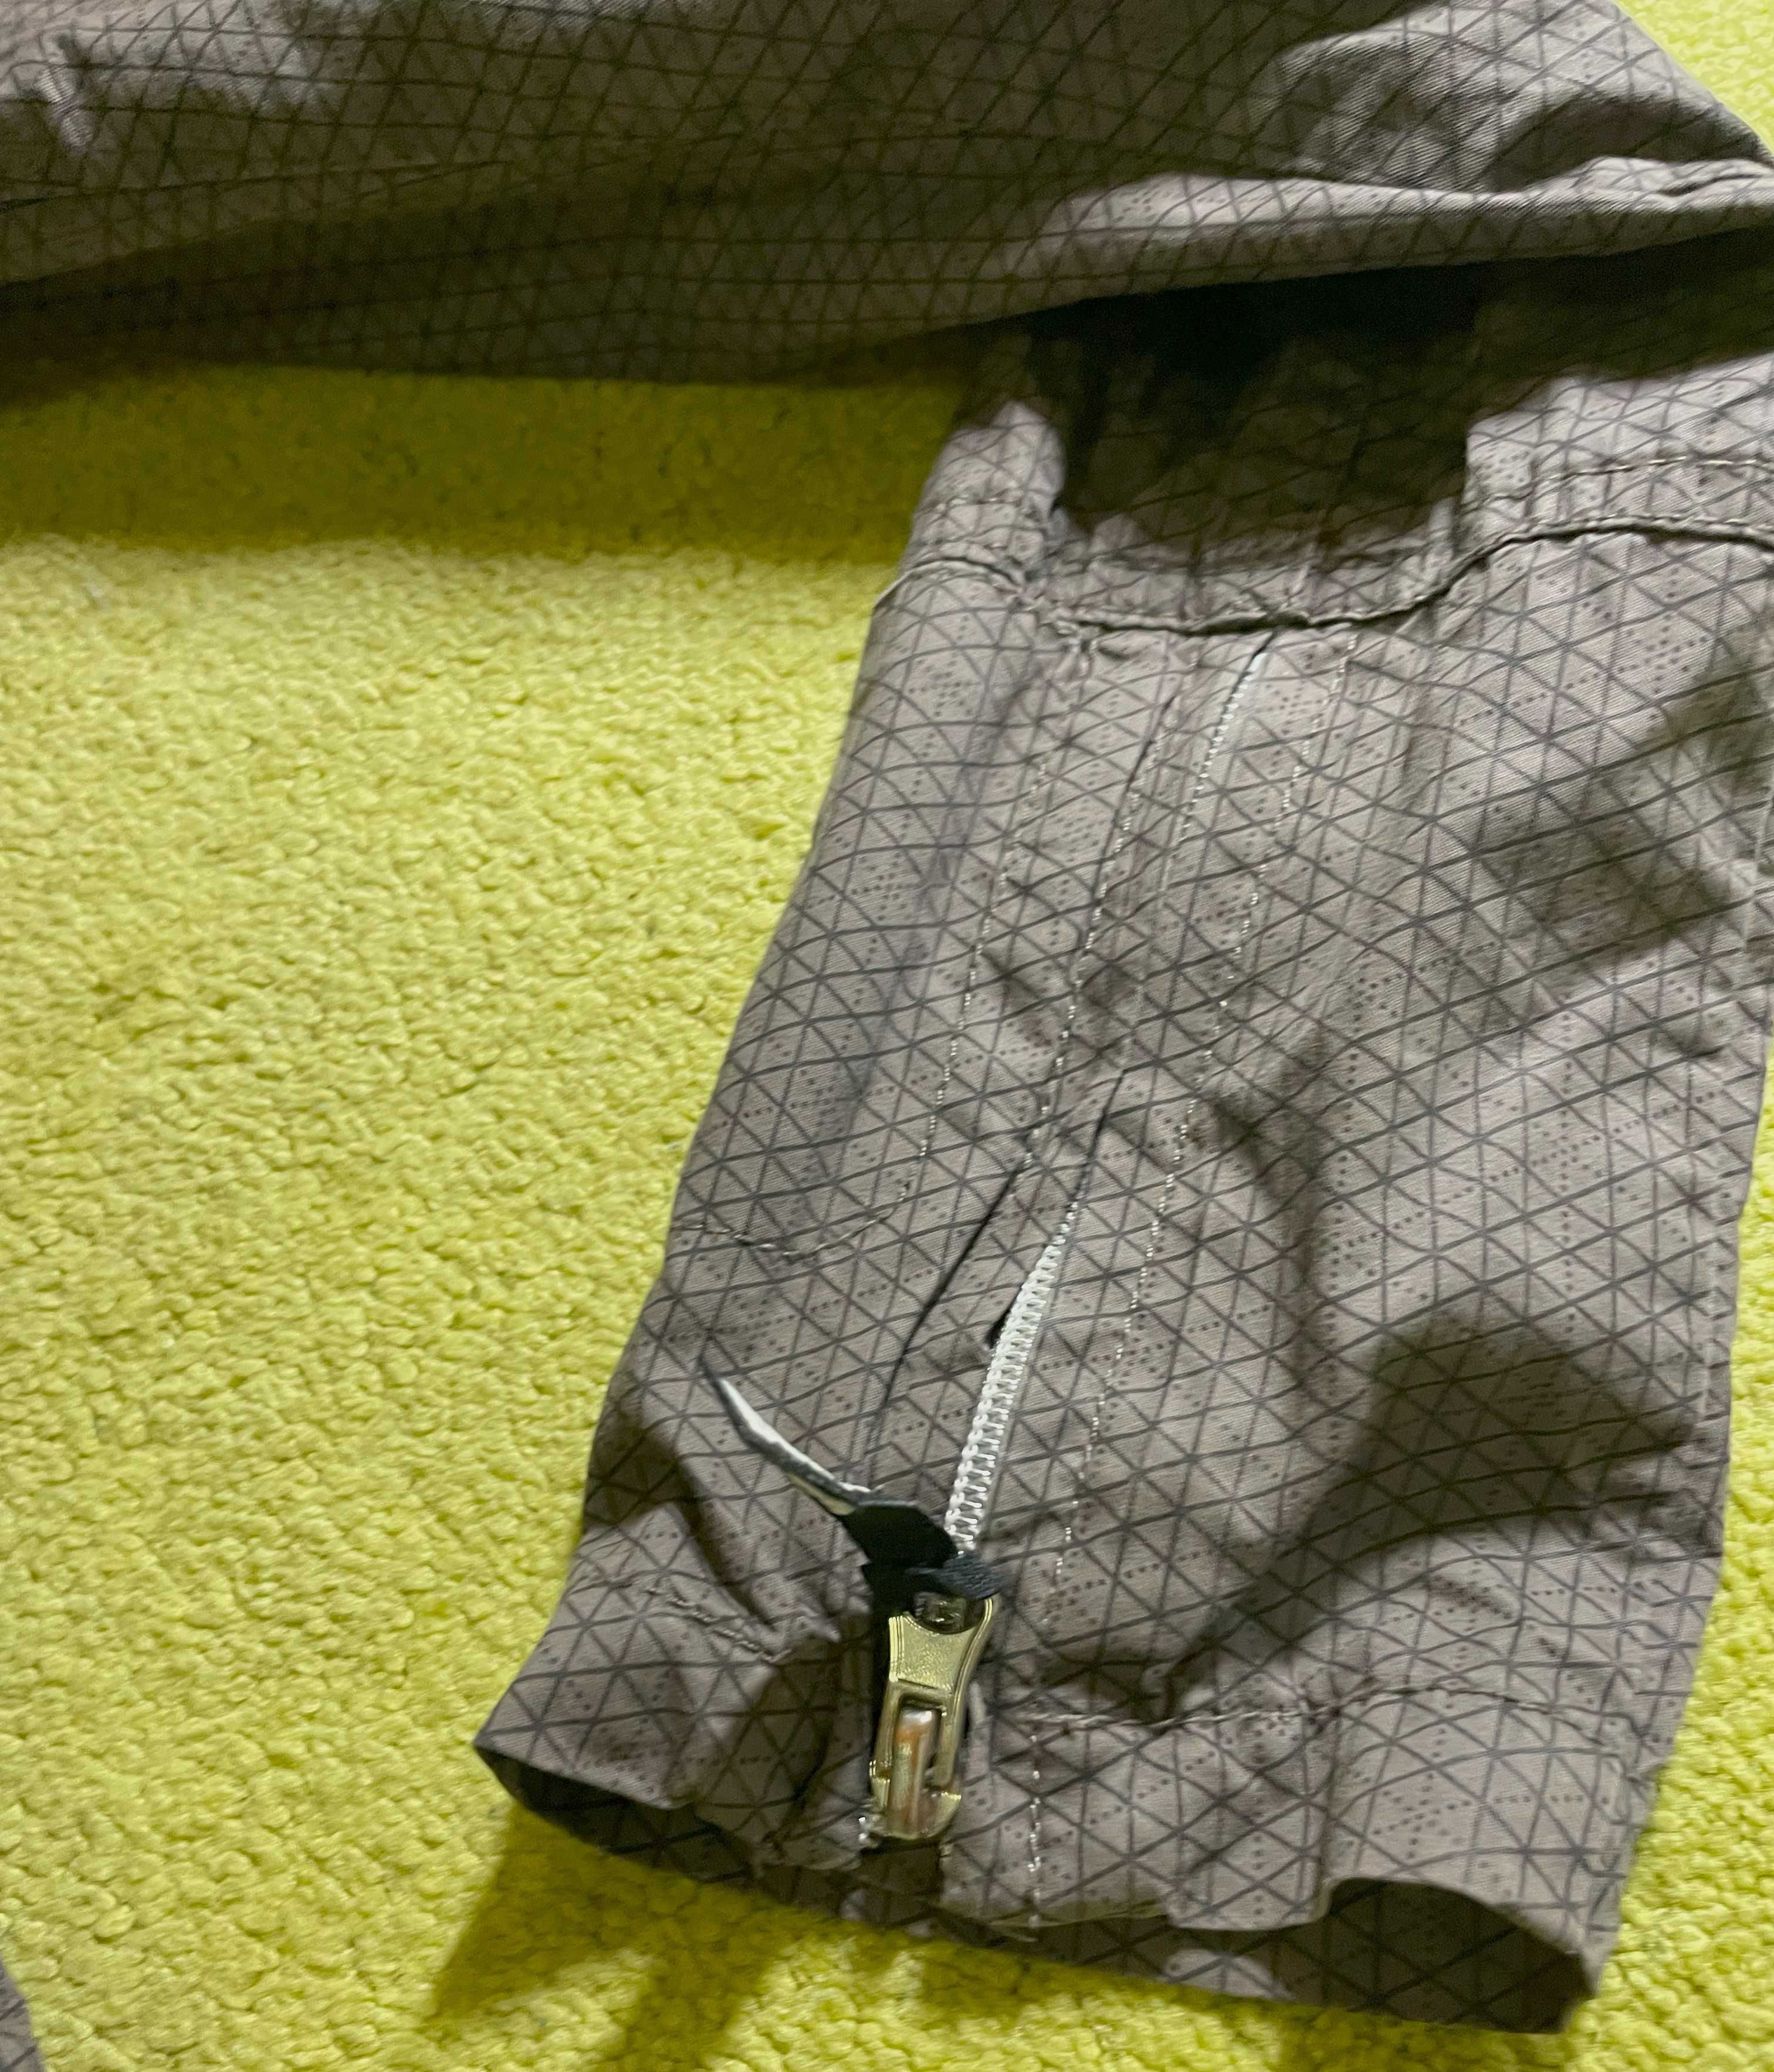 Сіра куртку бренду Bench, який не потребує реклами. Розмір 8, розмір S